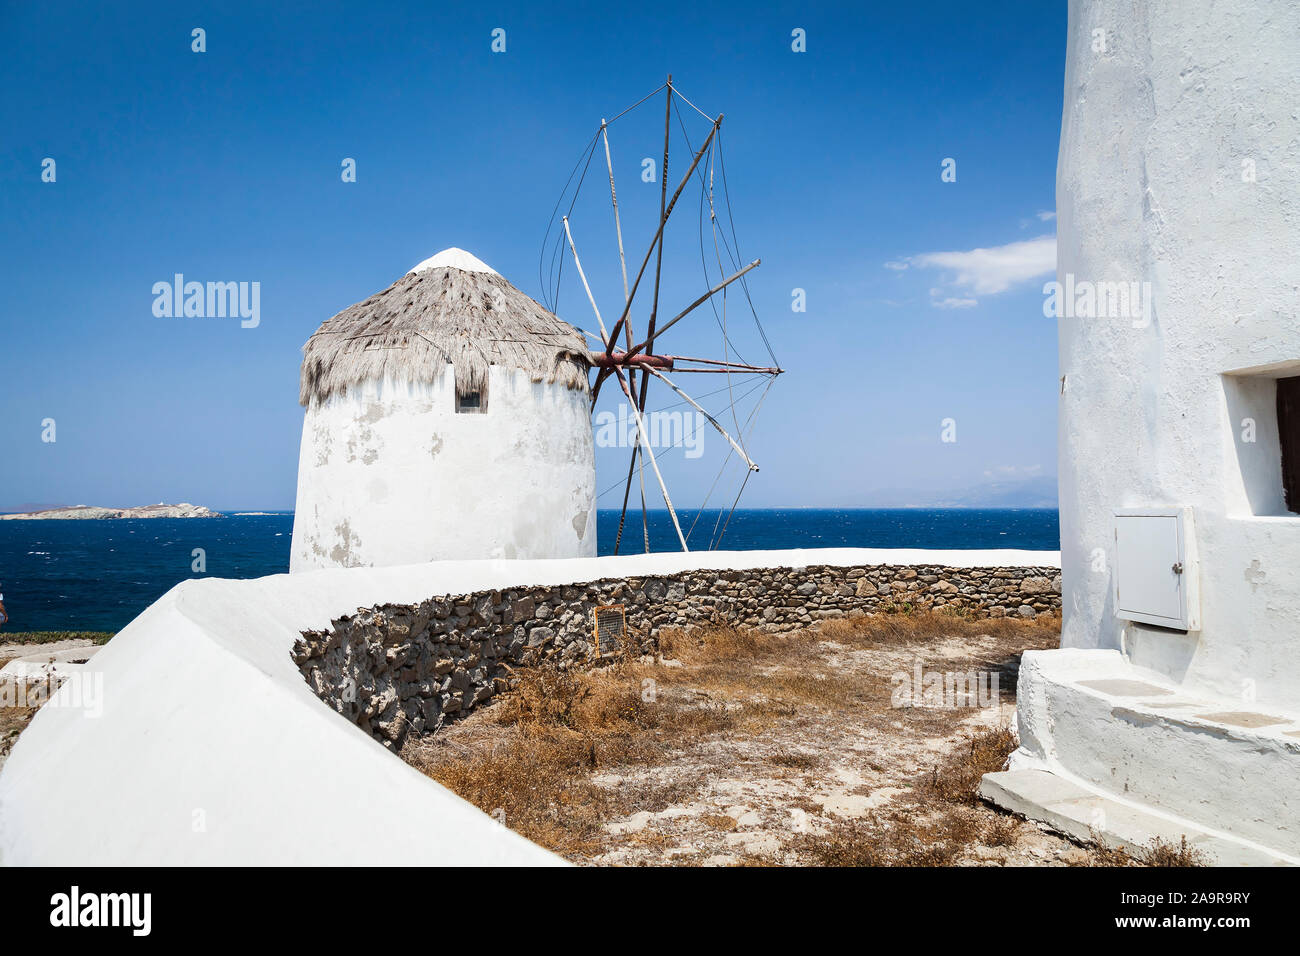 Eine schoene Windmuehle auf Santorini in Griechenland Stock Photo